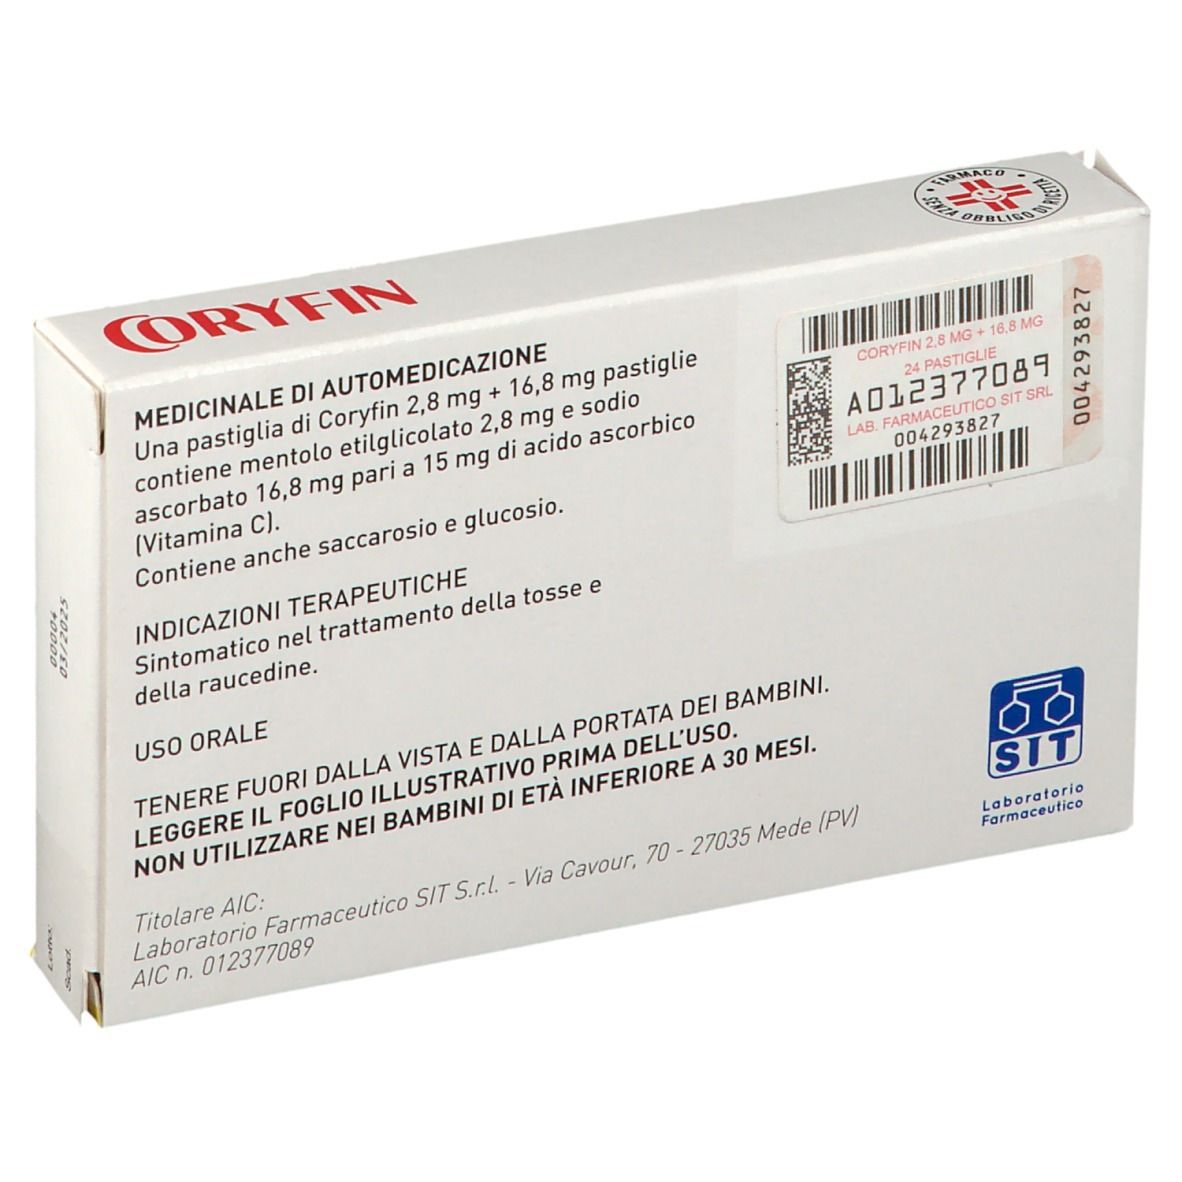 CORYFIN C 2,8 mg + 16,8 mg Pastiglie